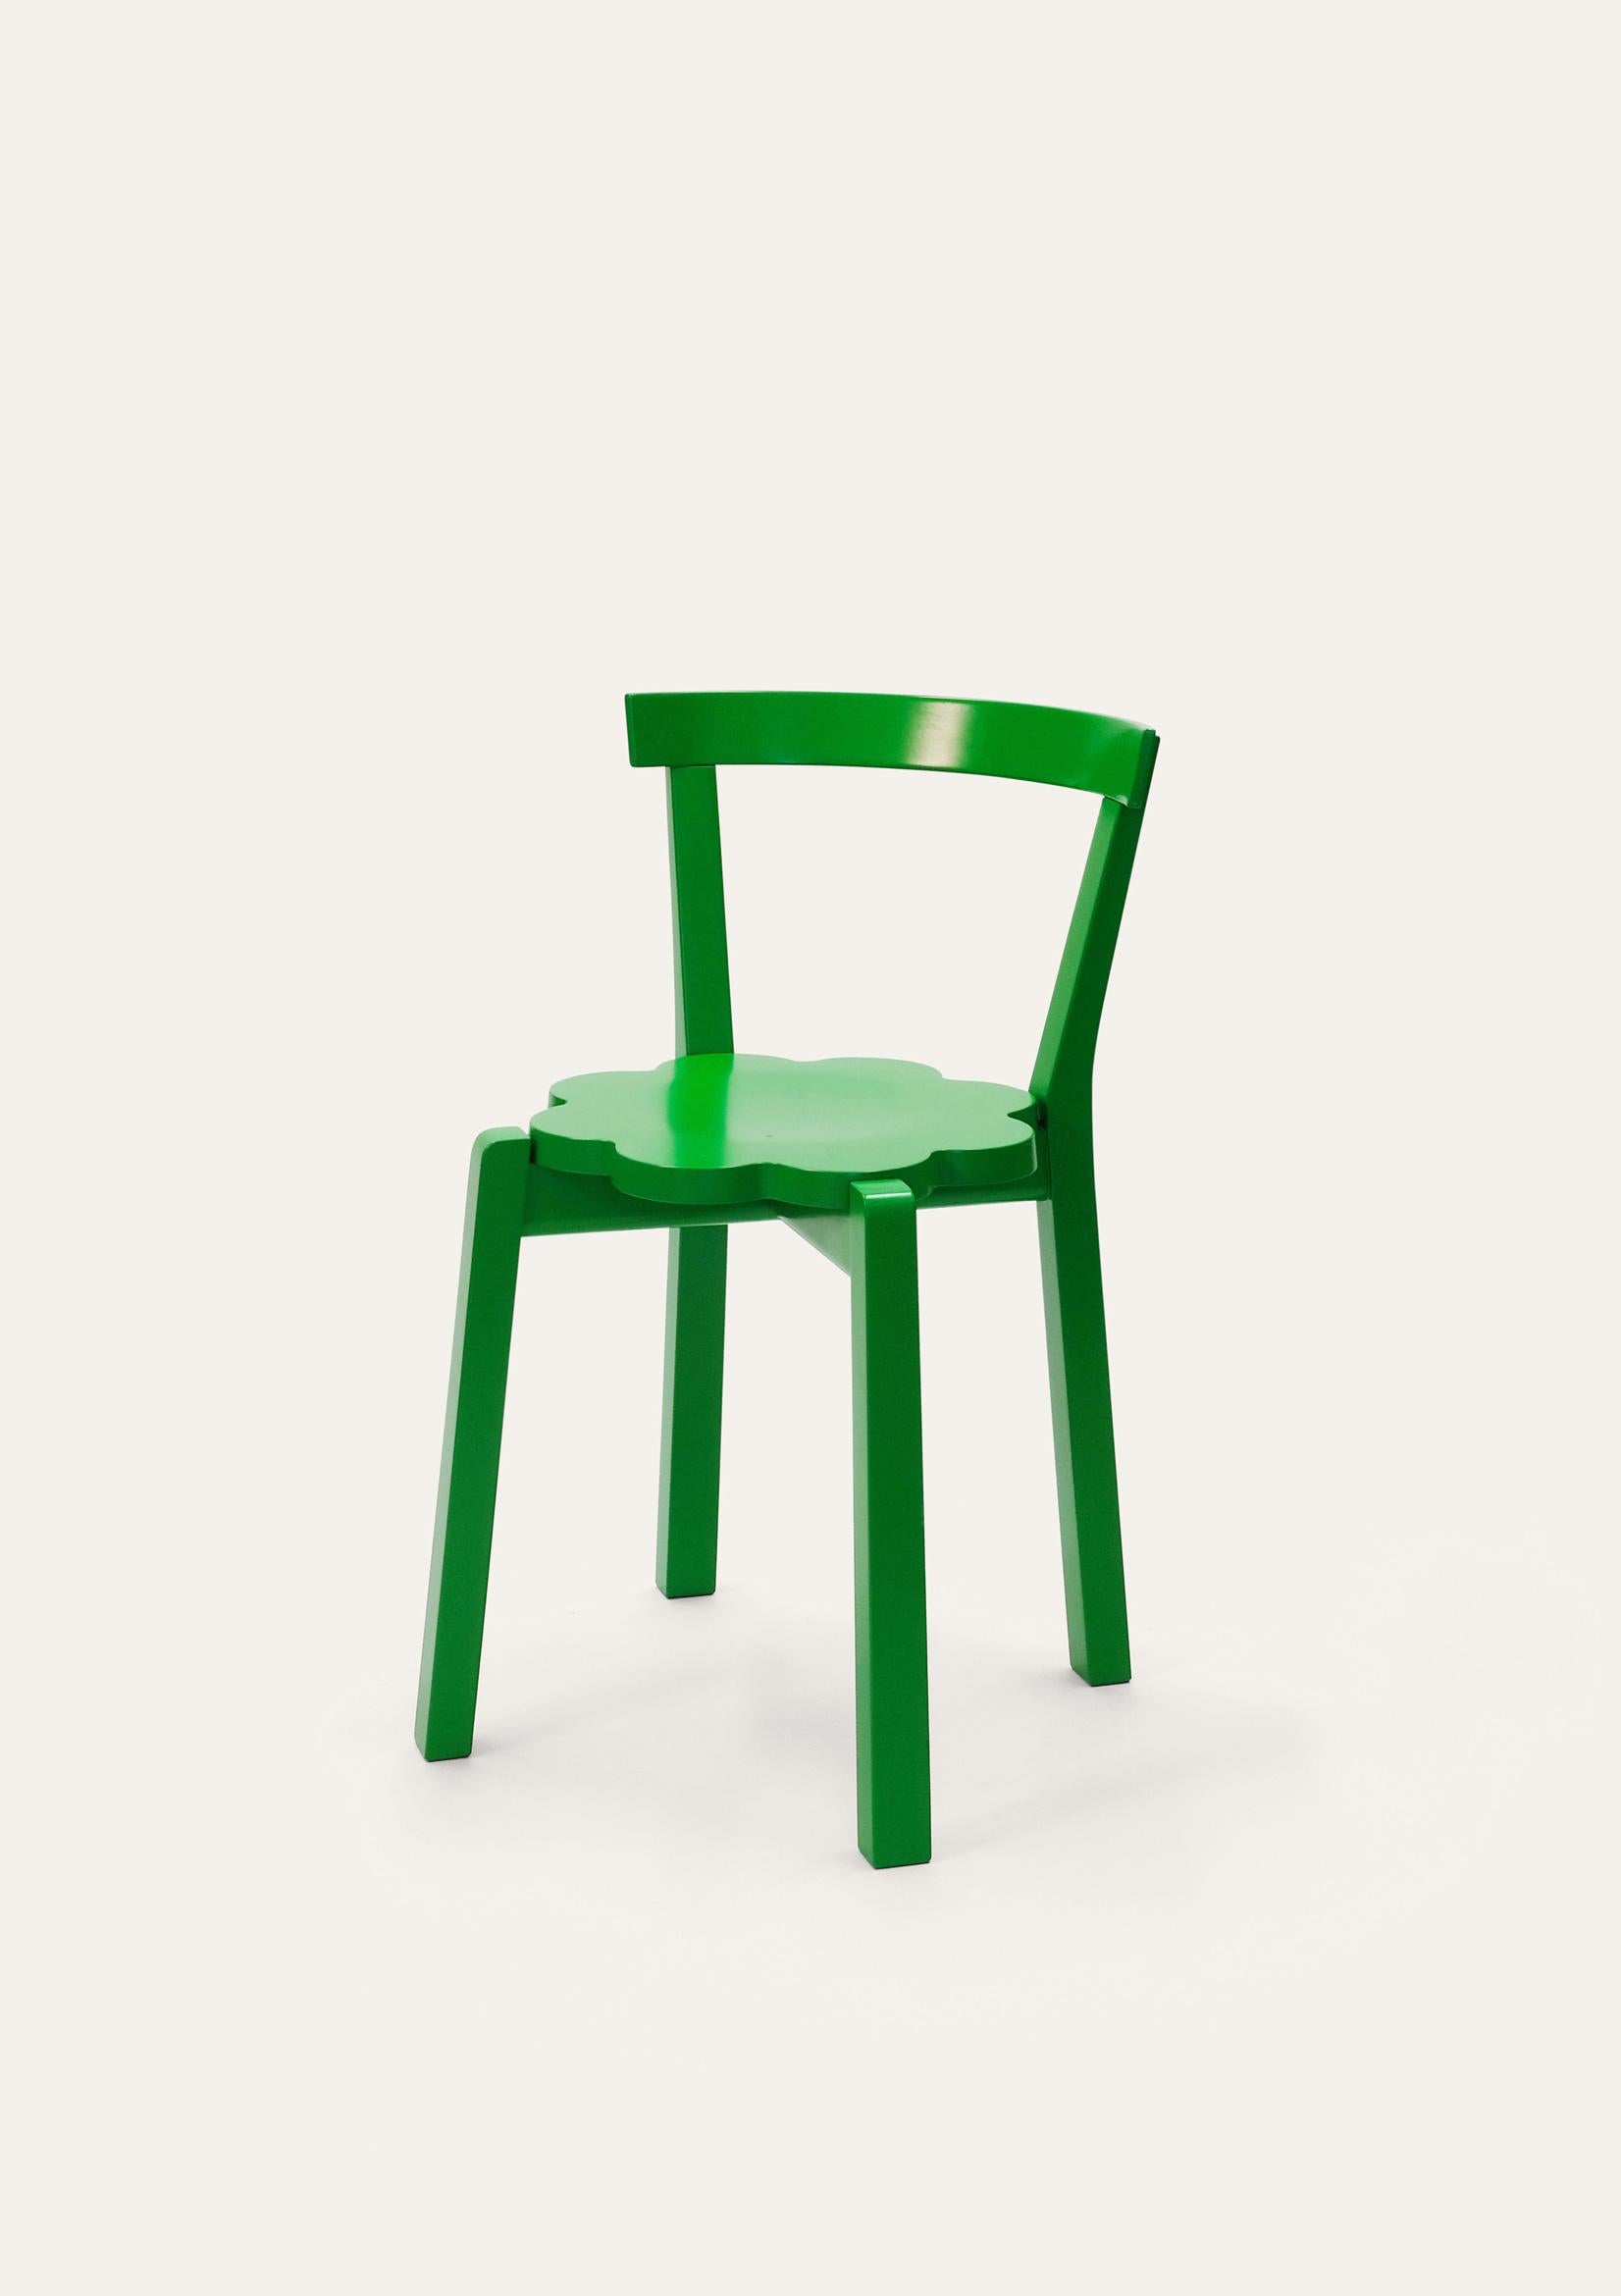 Grüner Blütenstuhl von Storängen Design
Abmessungen: T 46 x B 41 x H 72 x SH 45cm
MATERIAL: Birkenholz.
Erhältlich in anderen Farben und Größen.

Ein kleiner und ordentlicher, stapelbarer Stuhl, der sich gut an Tischen in Cafés und Wohnzimmern